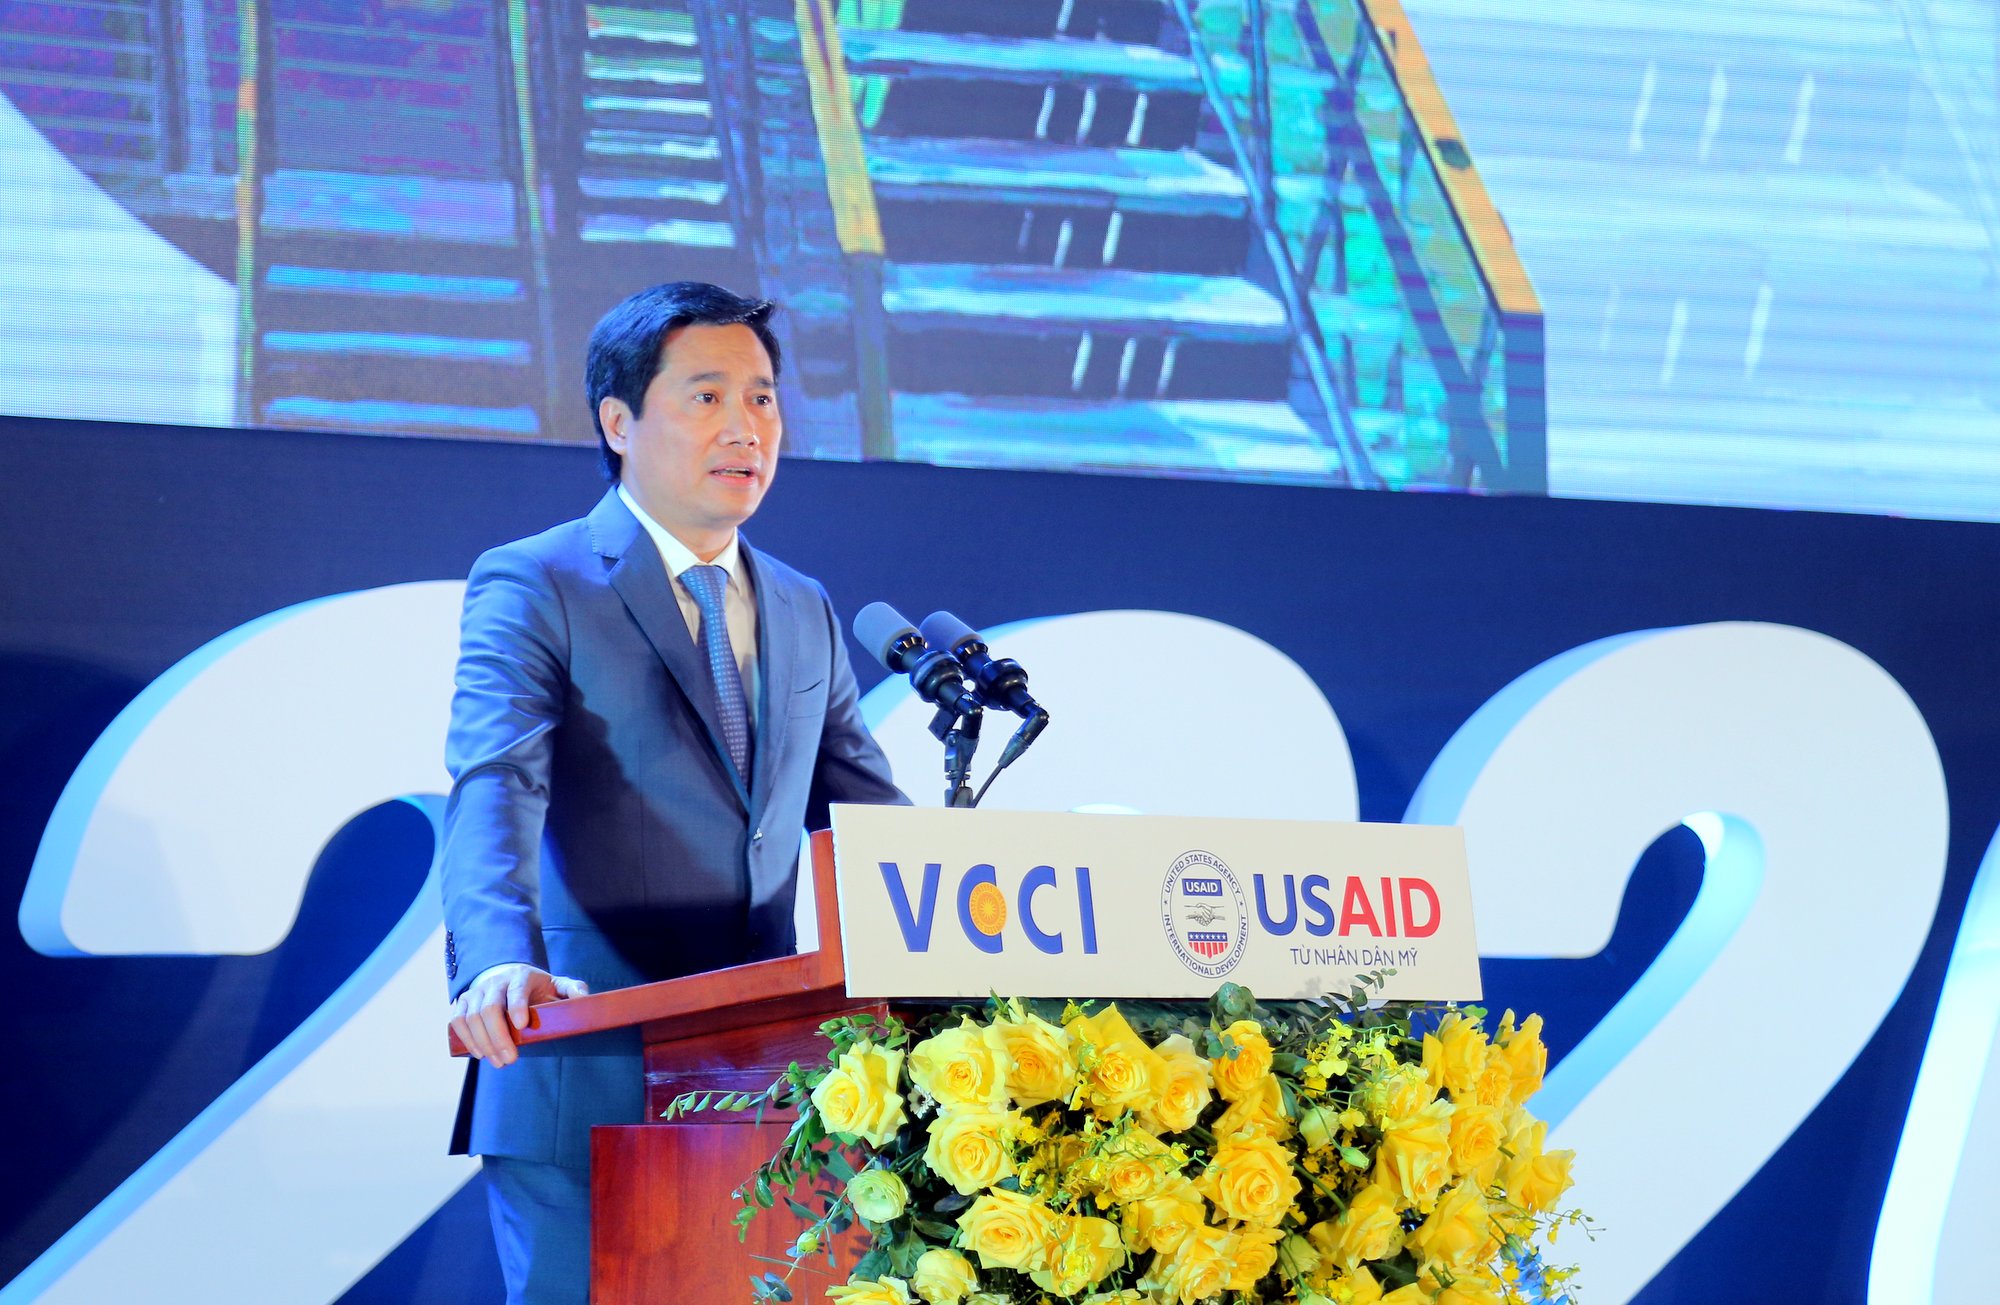 Đồng chí Nguyễn Tường Văn, Phó Bí thư Tỉnh uỷ, Chủ tịch UBND tỉnh Quảng Ninh, phát biểu tại buổi lễ.